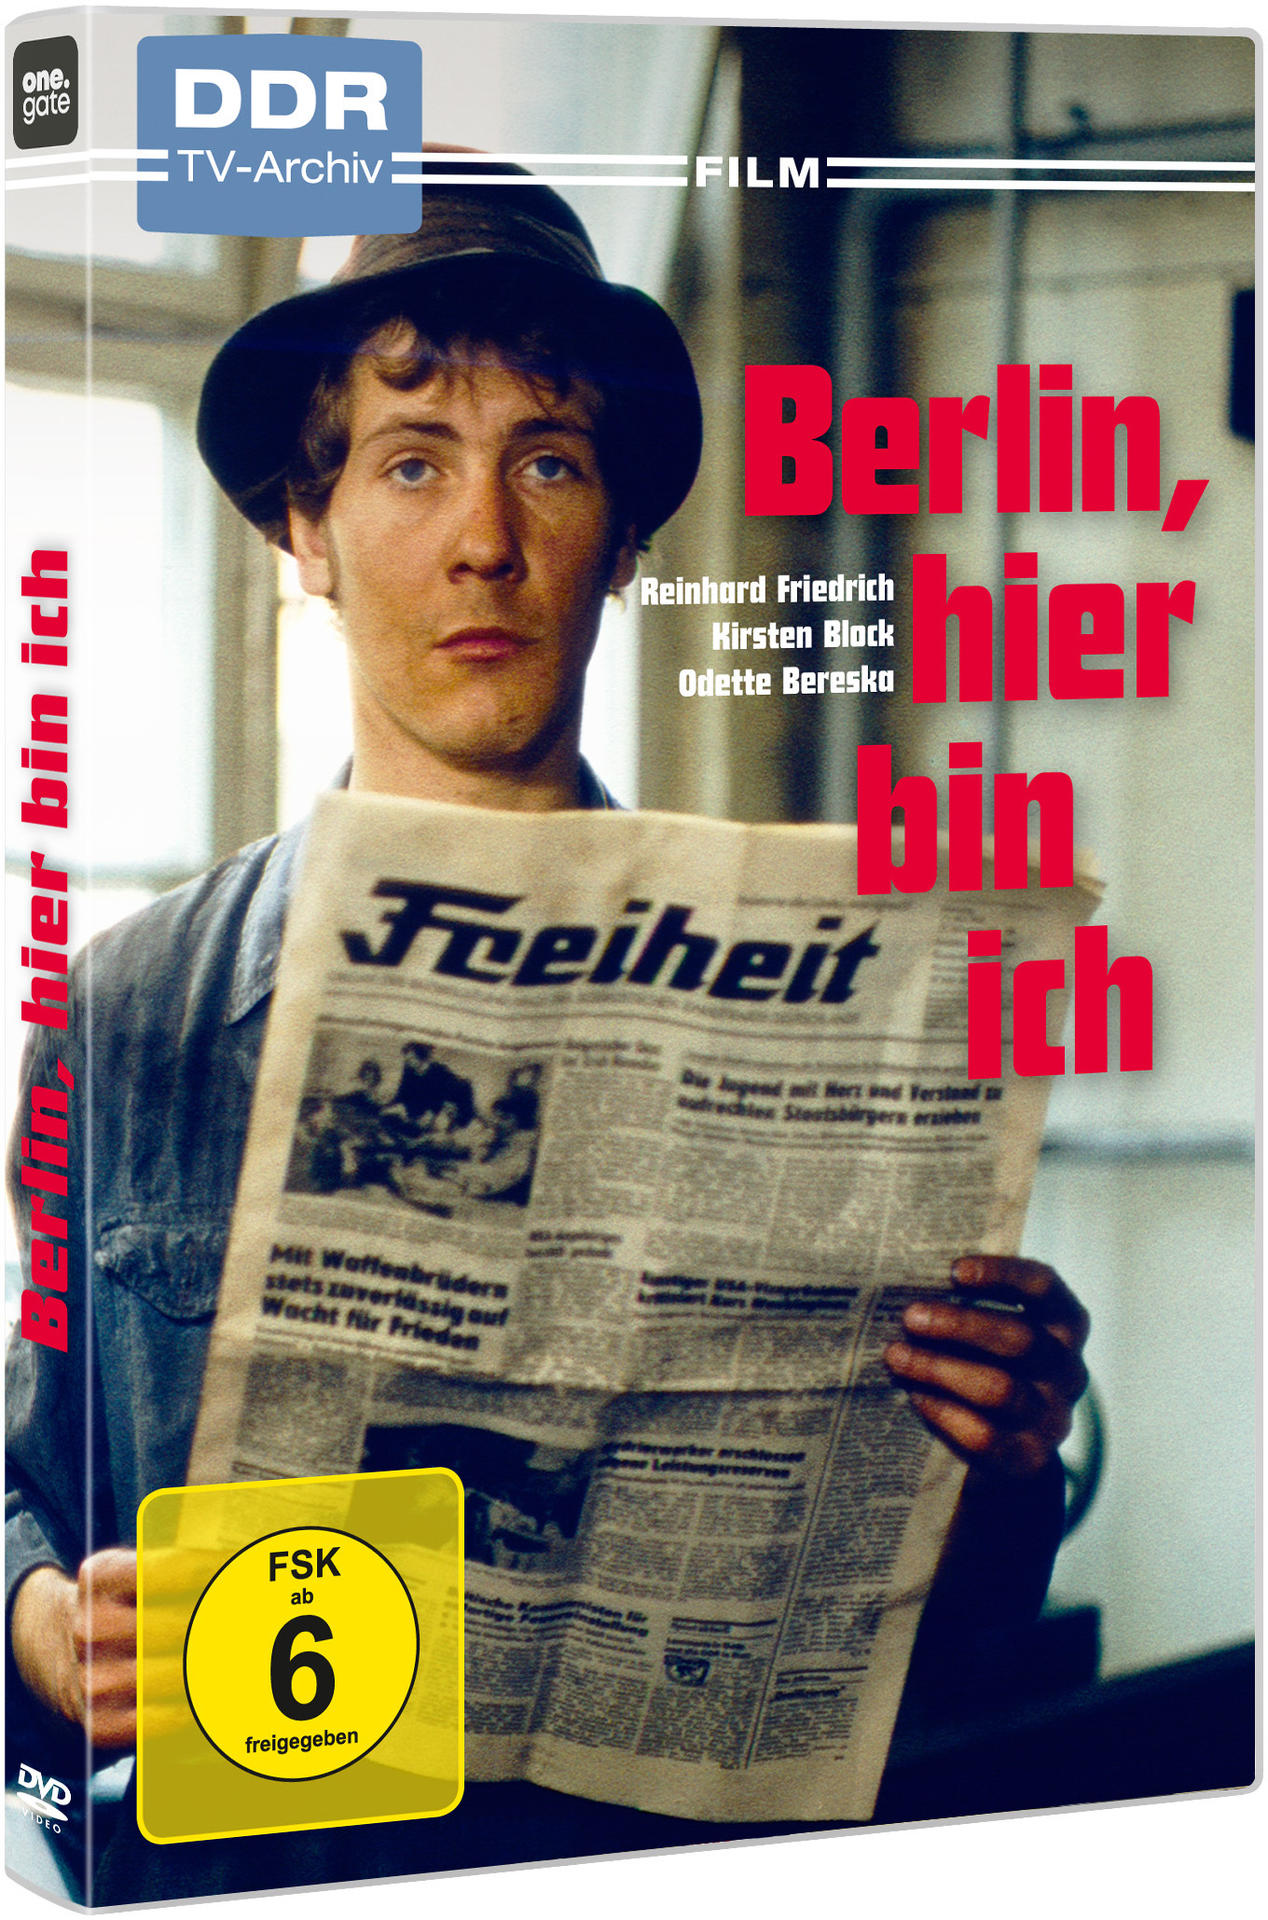 bin ich Berlin, DVD hier